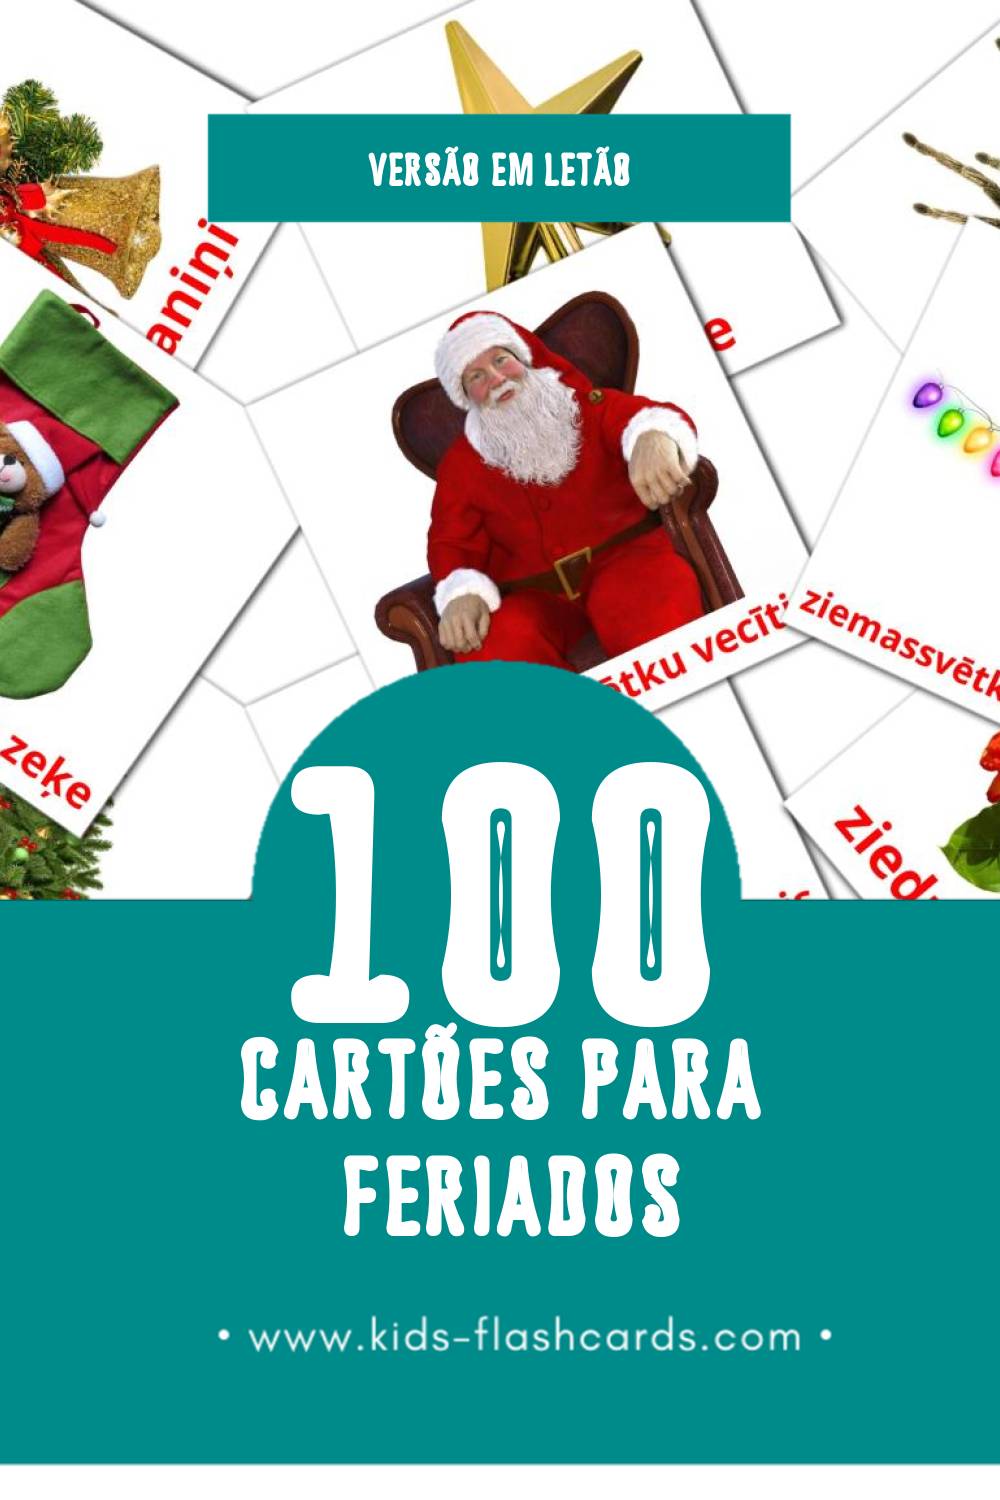 Flashcards de Brīvdienas Visuais para Toddlers (100 cartões em Letão)